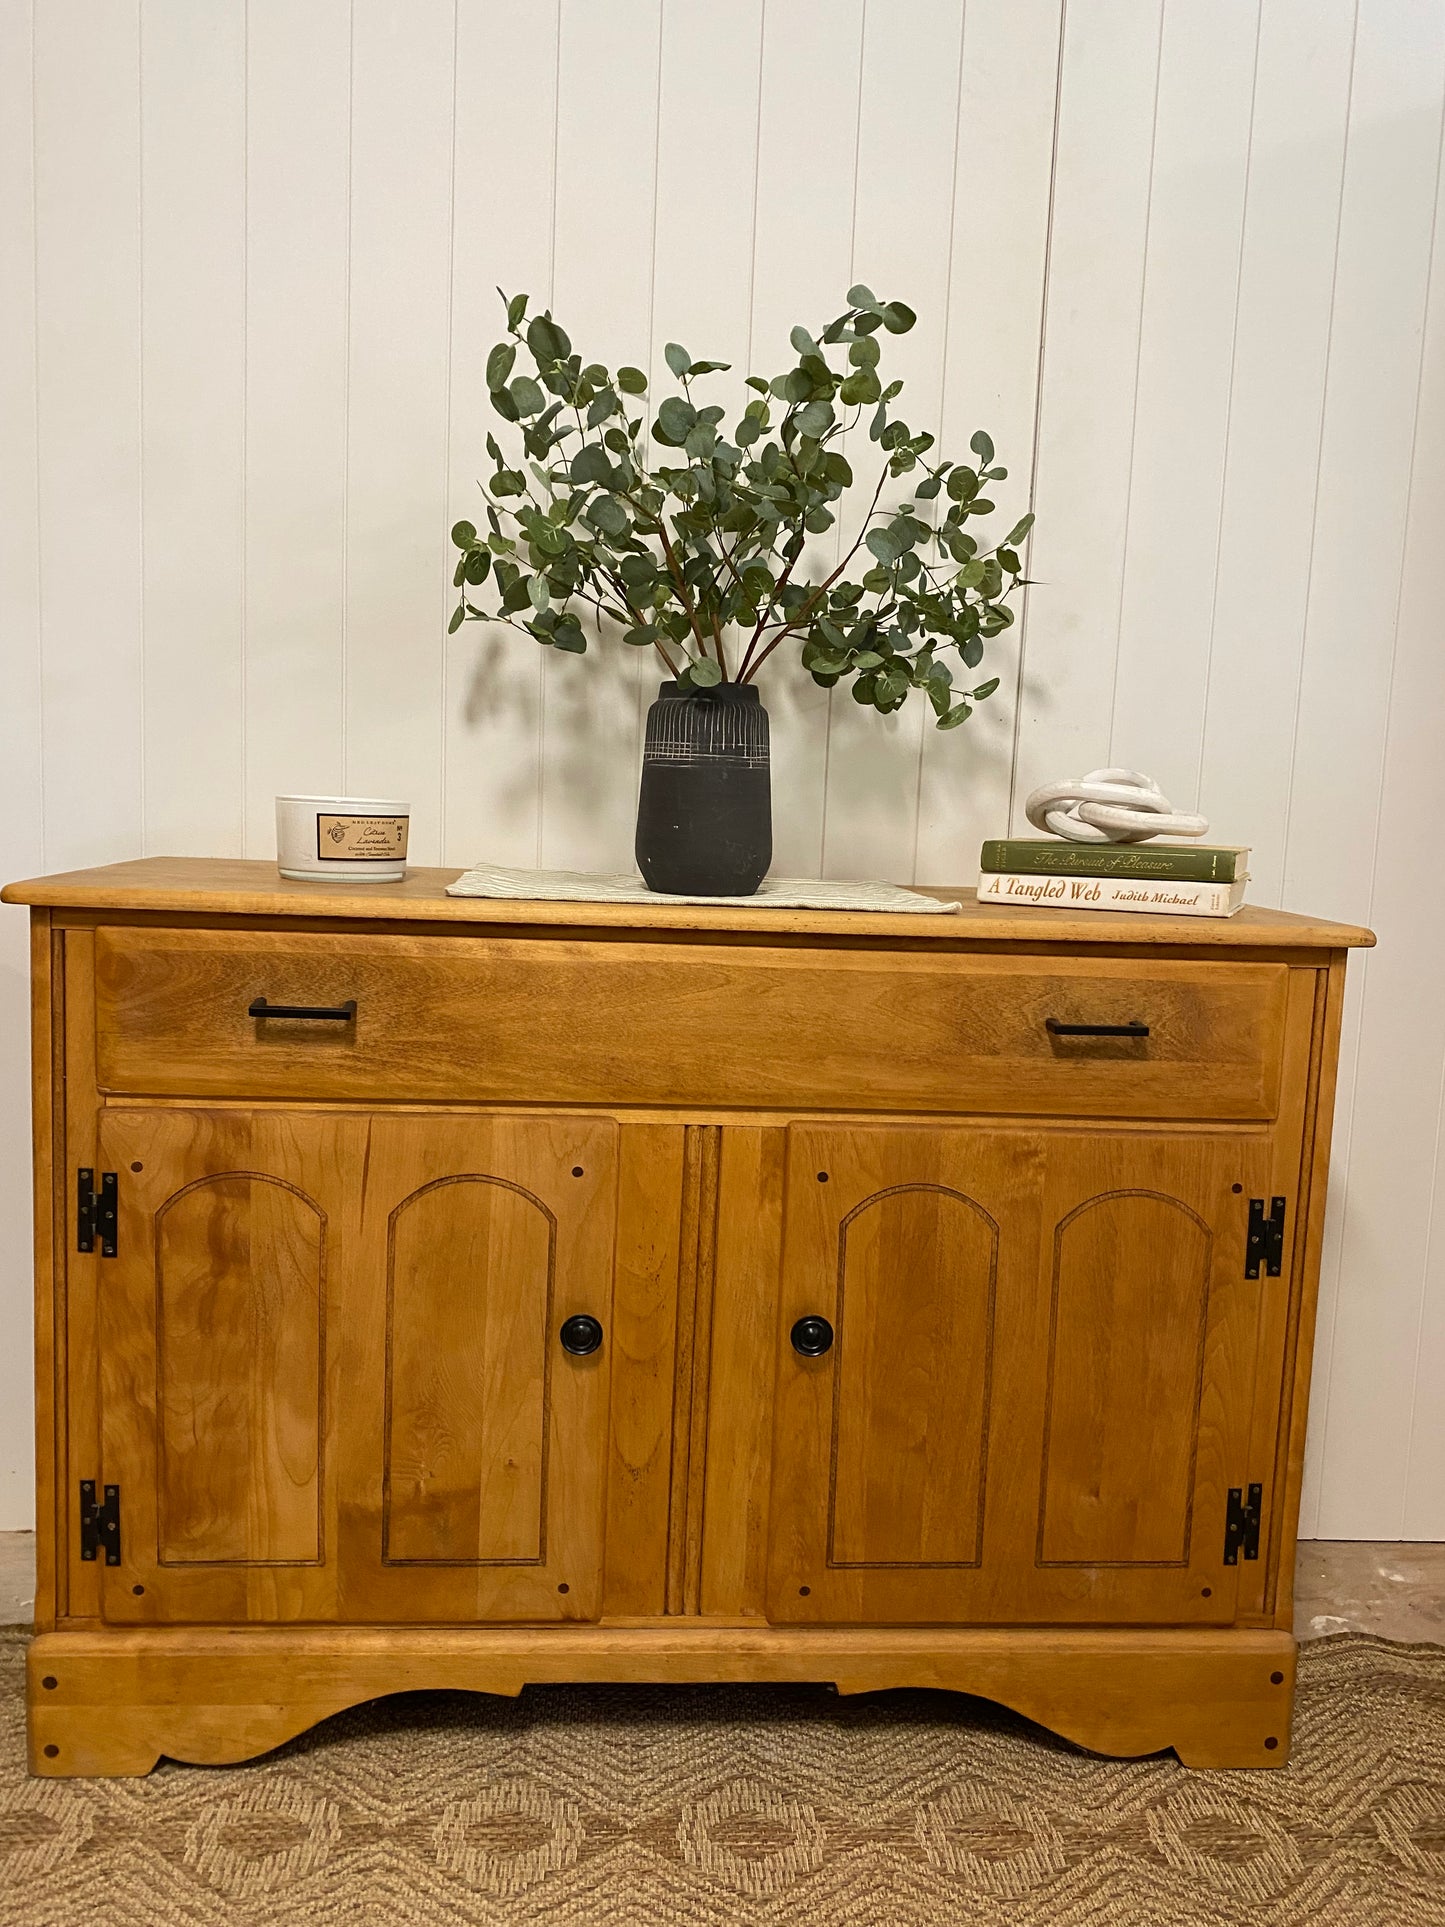 Vintage pine Refinished Sideboard Cabinet